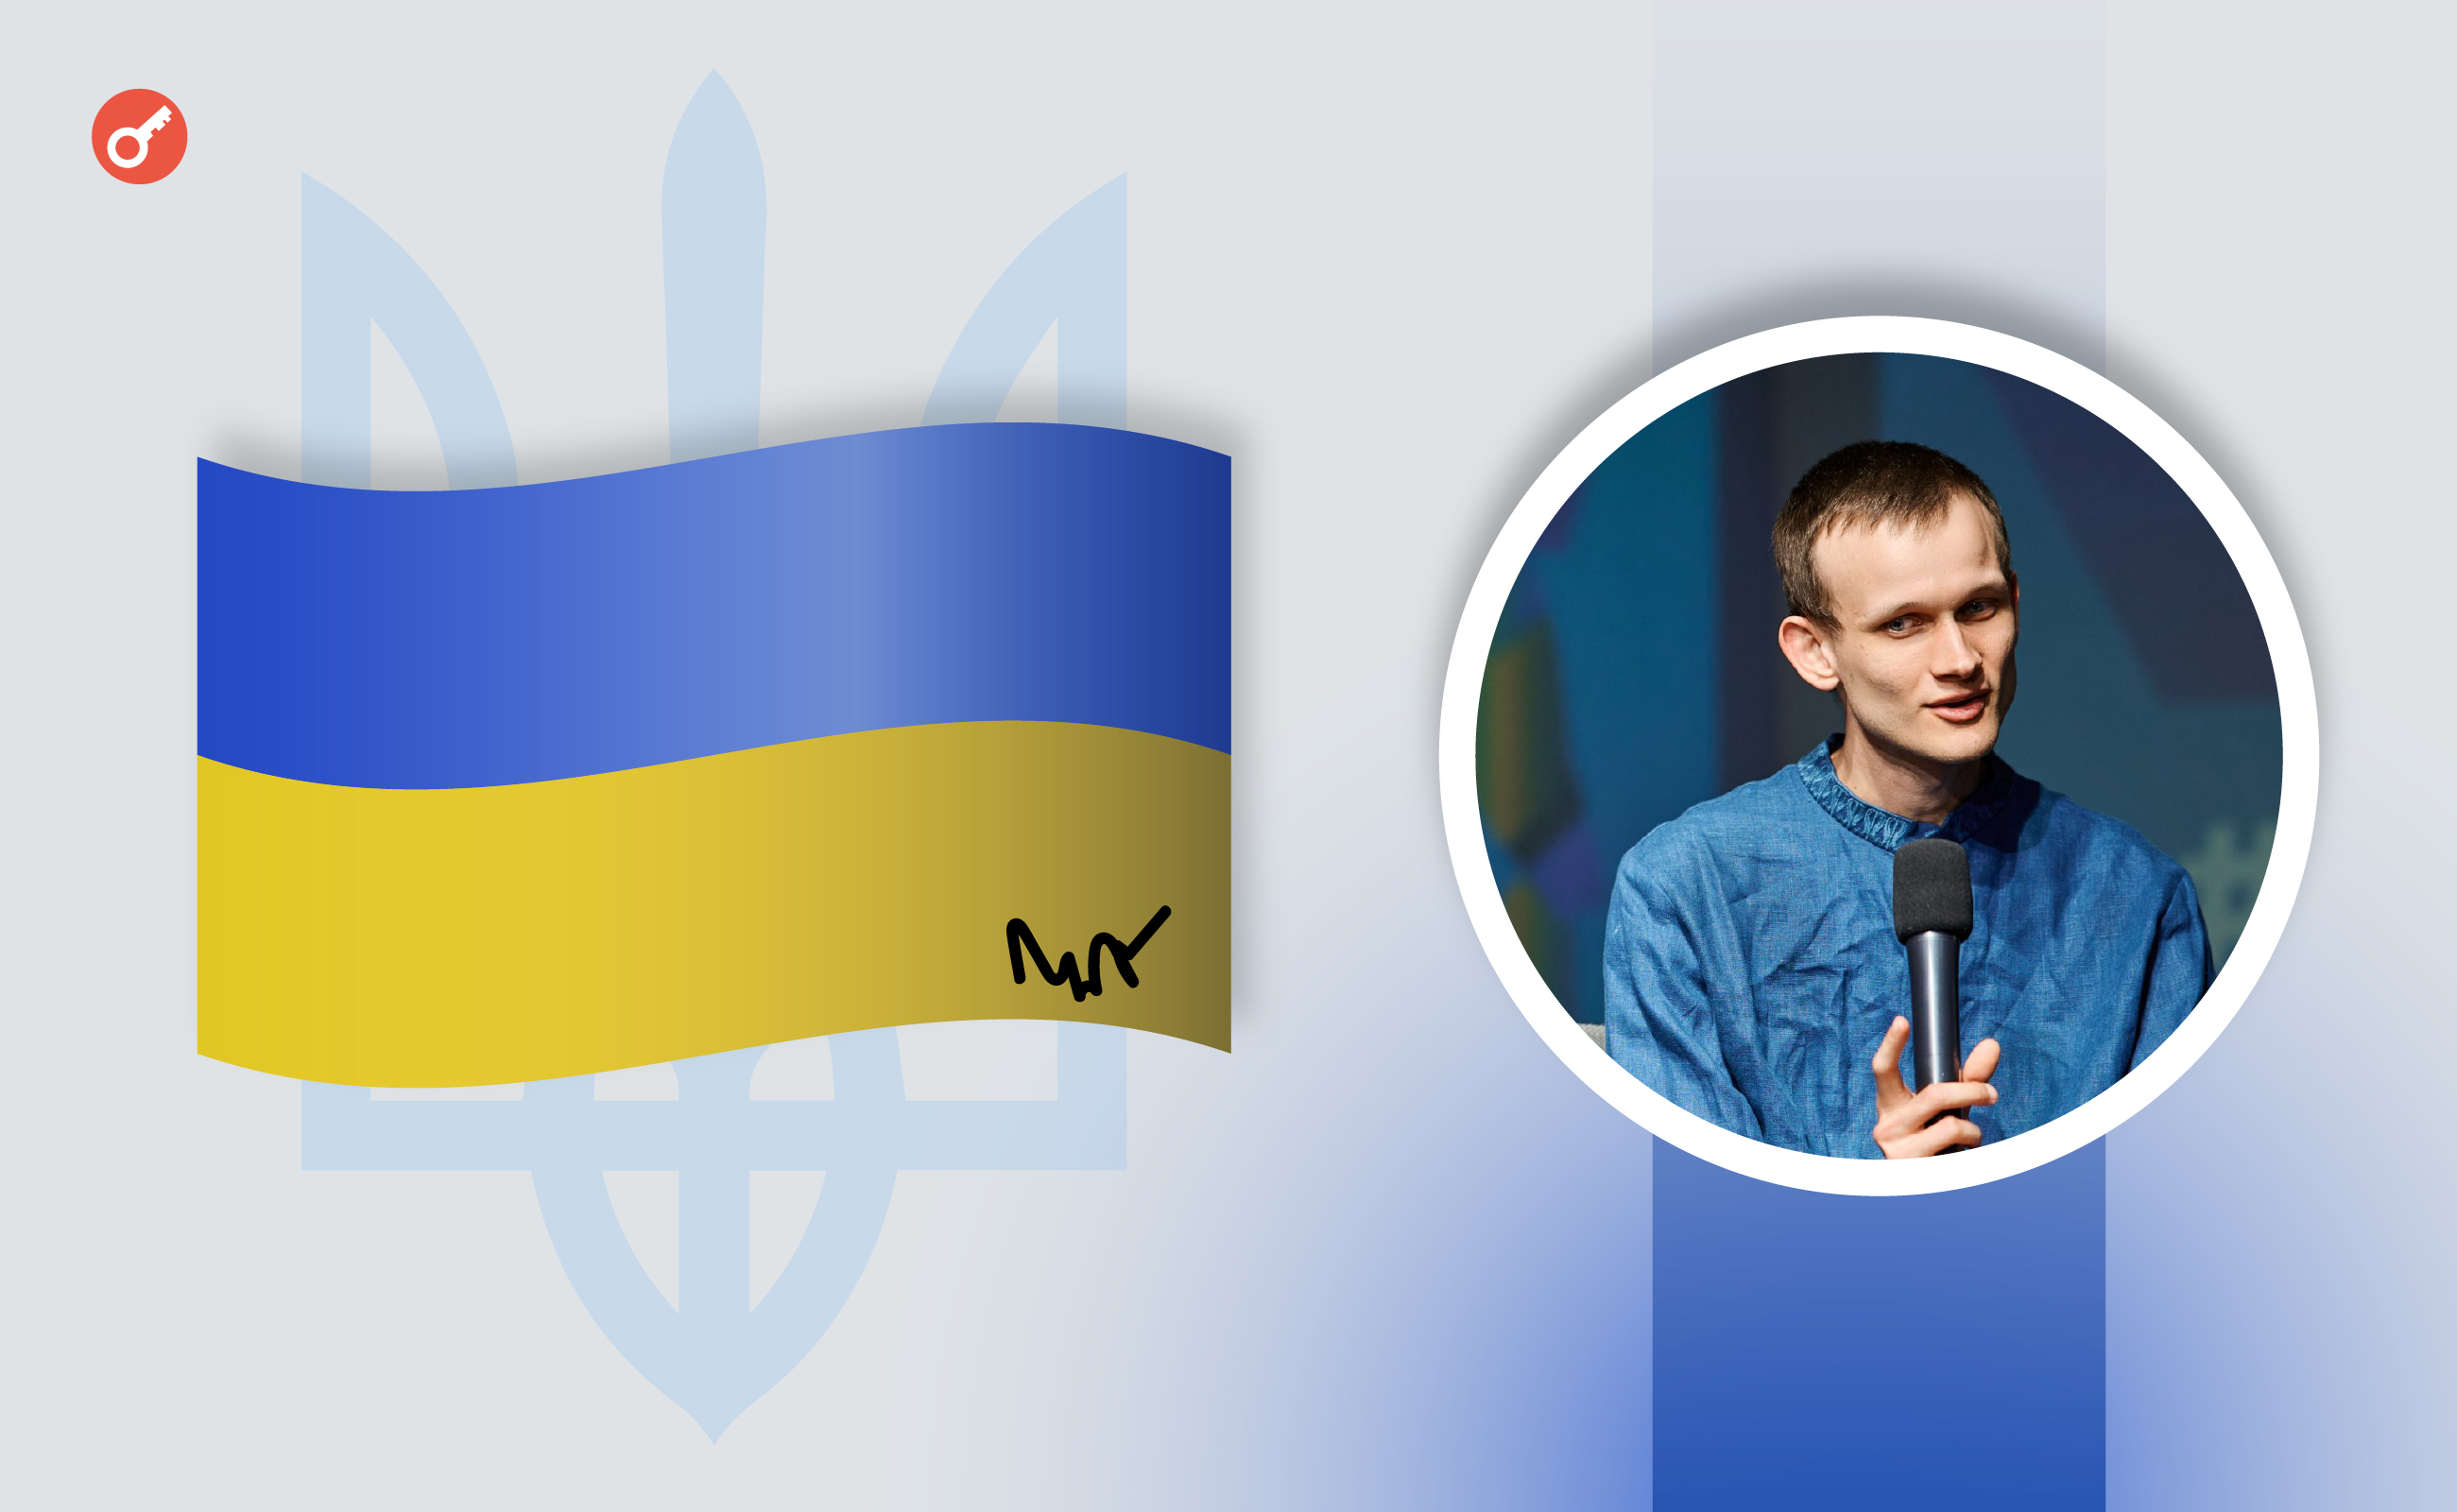 Підписаний Бутеріним прапор України допоміг зібрати близько $8000 для допомоги українським військовим. Головний колаж новини.